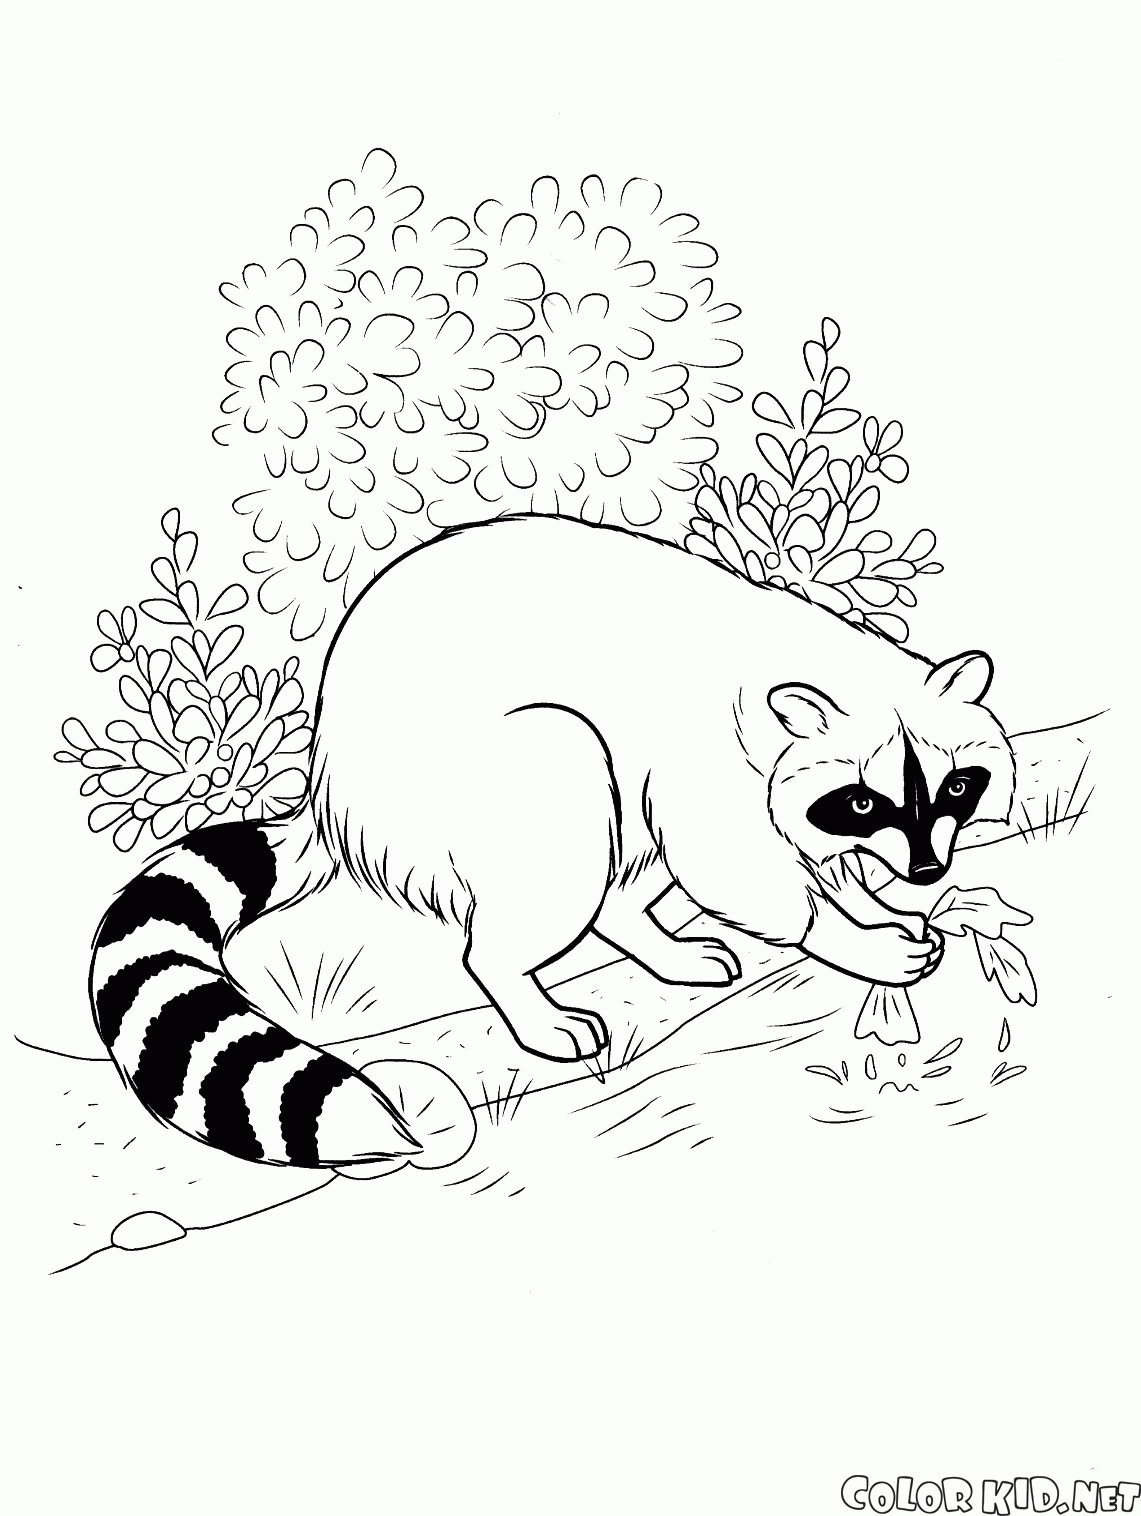 Raccoon fanden das Essen